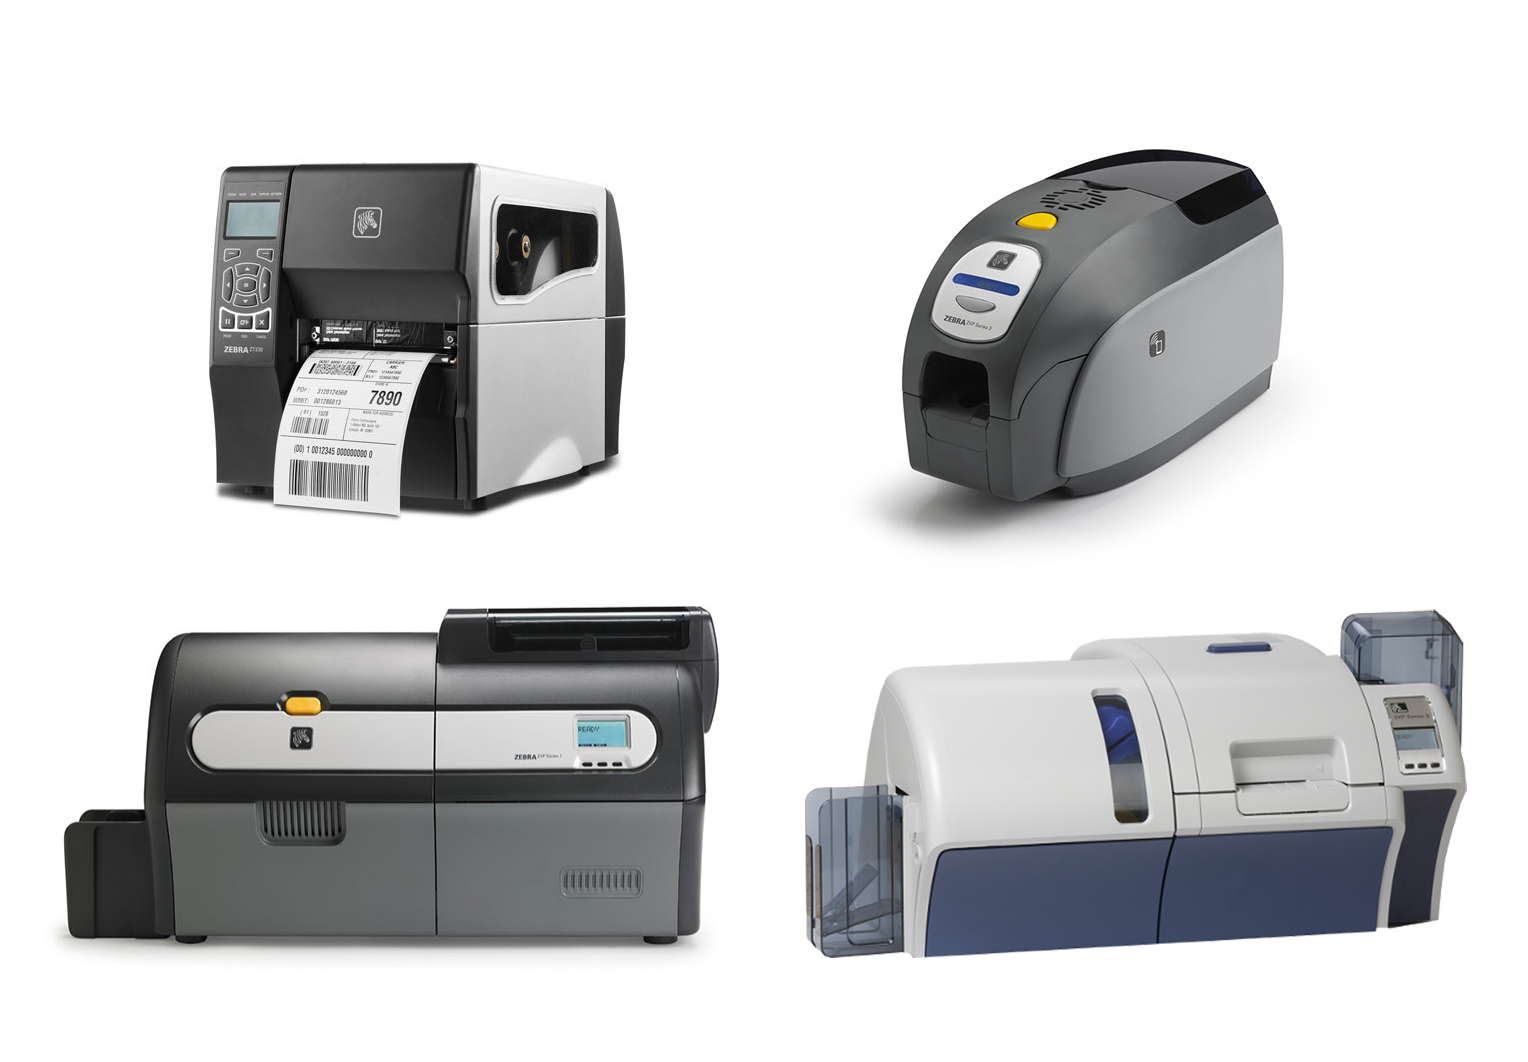 zebra-printer-card-Dubaimachines.com-Dubaimachines-Dubai-UAE-Sharjah-Abu-Dhabi-GCC